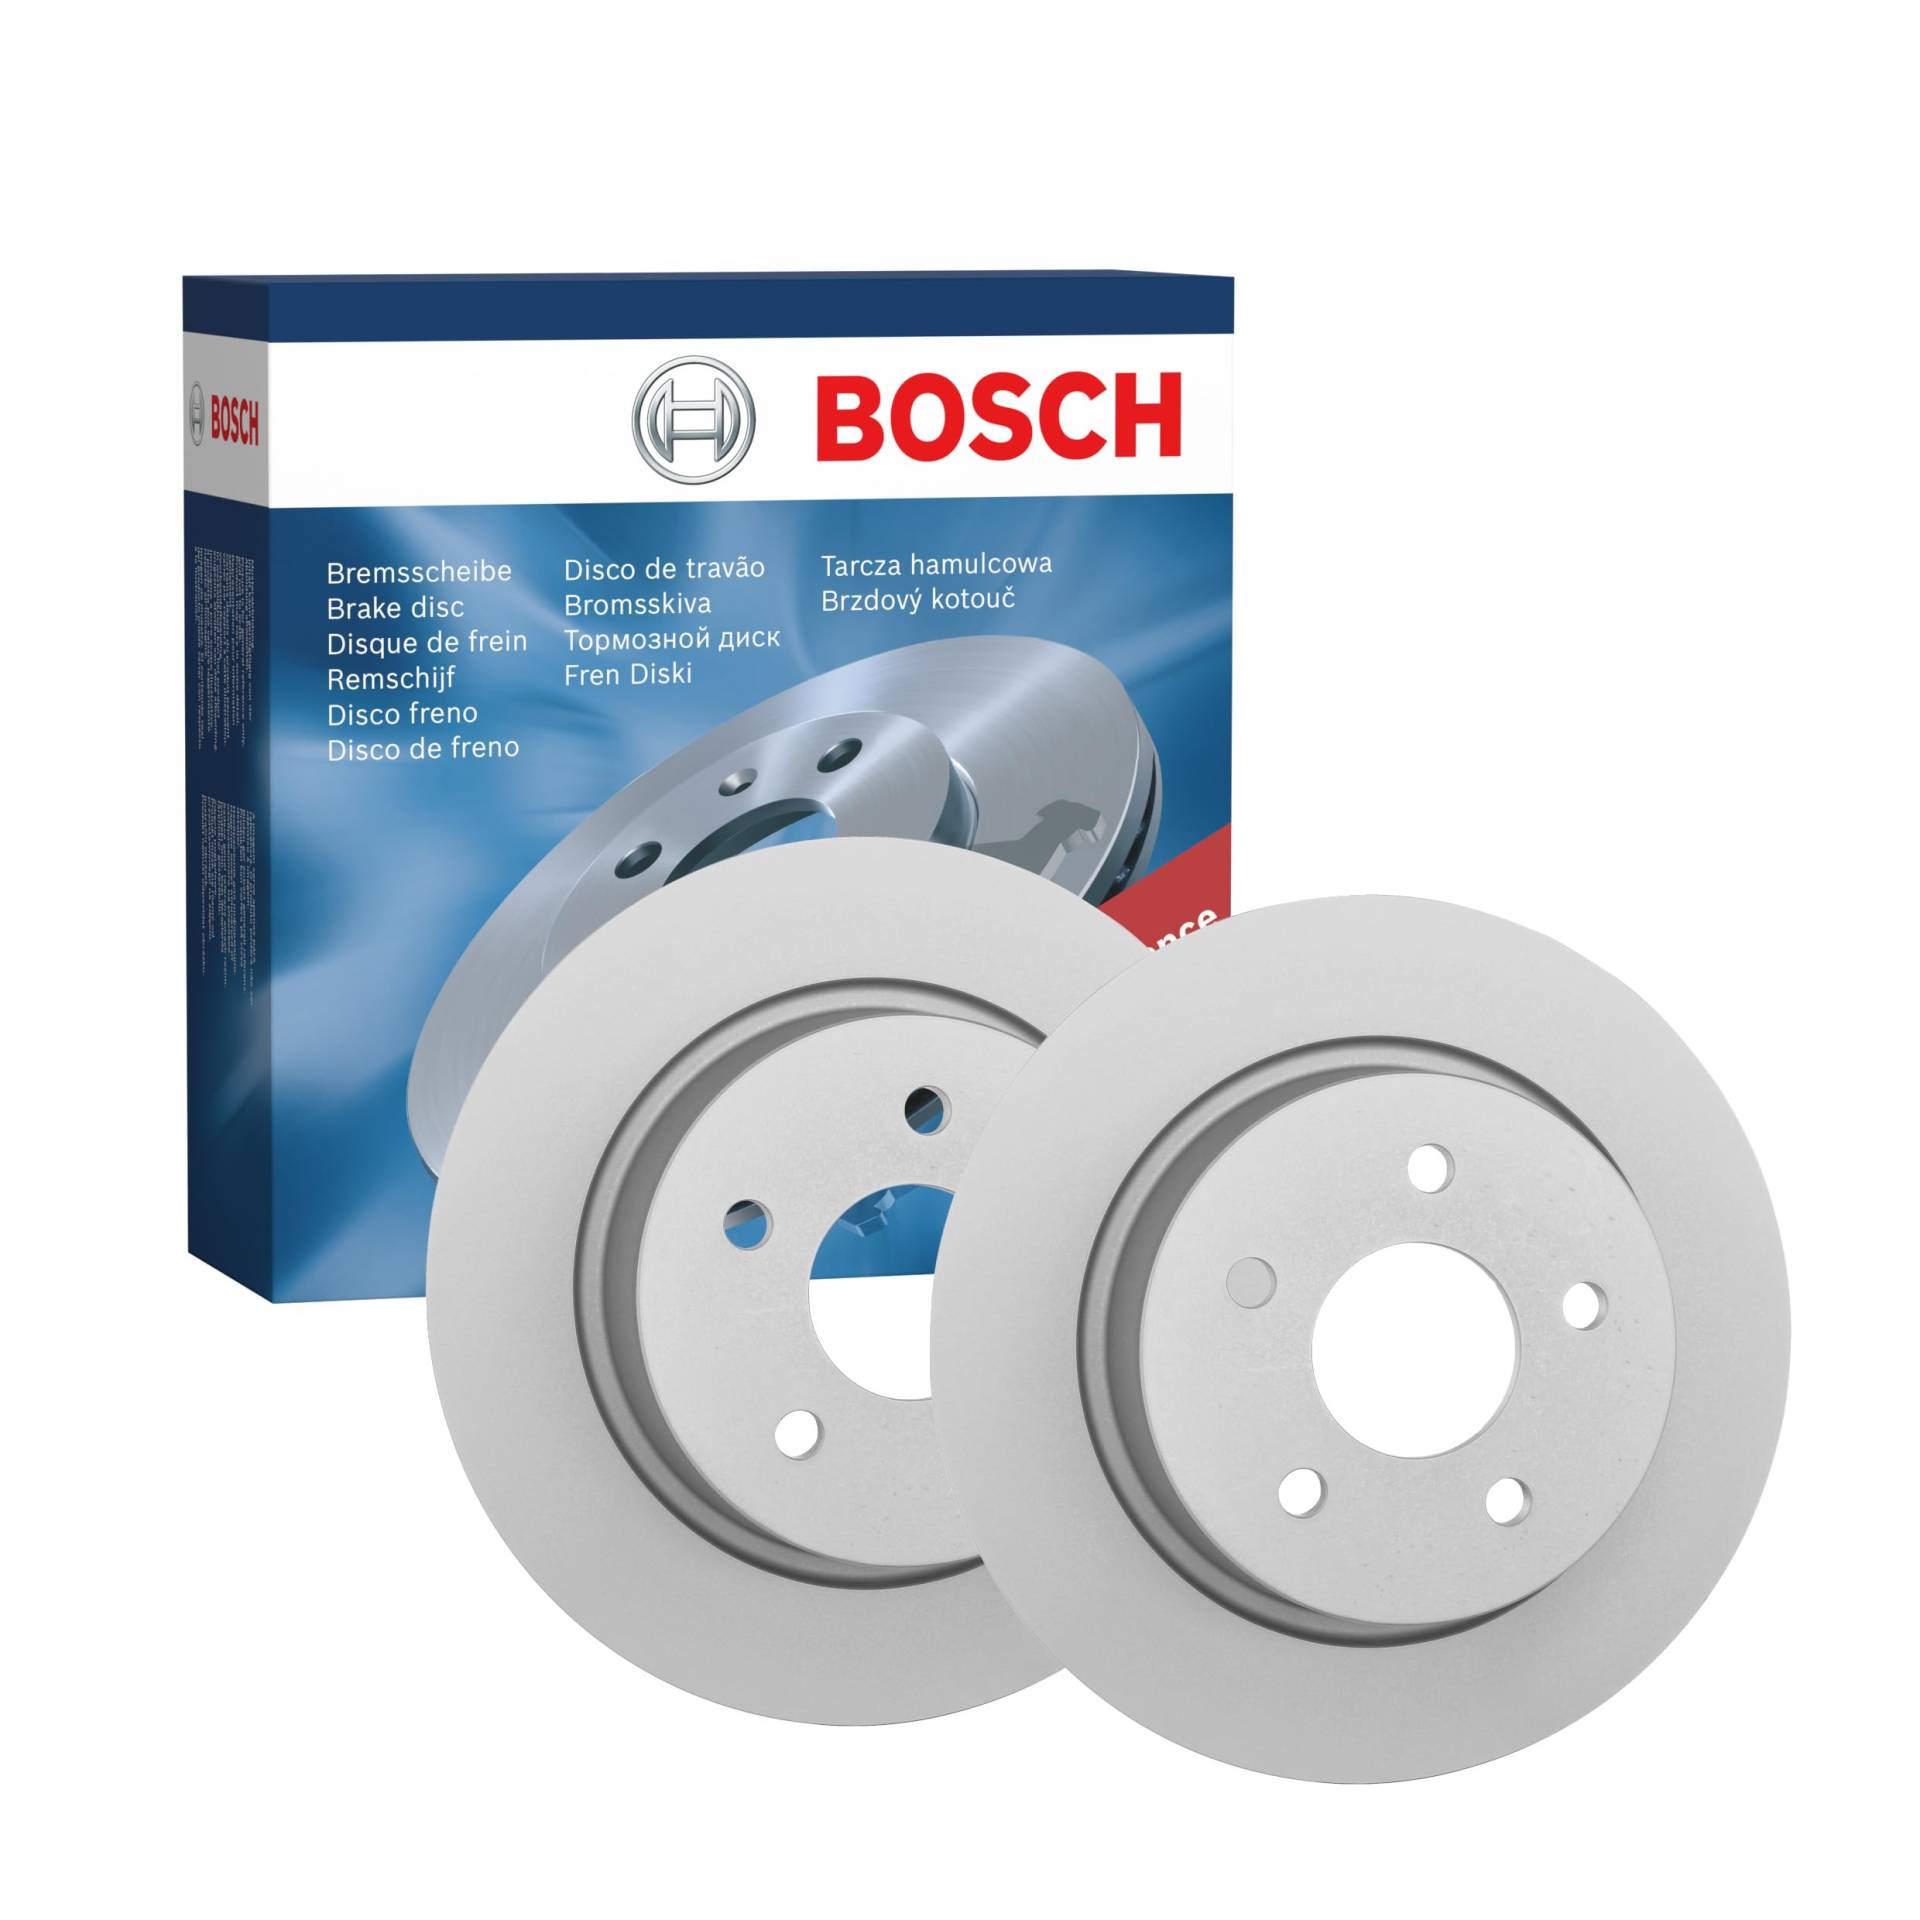 Bosch BD1592 Bremsscheiben - Hinterachse - ECE-R90 Zertifizierung - zwei Bremsscheiben pro Set von Bosch Automotive